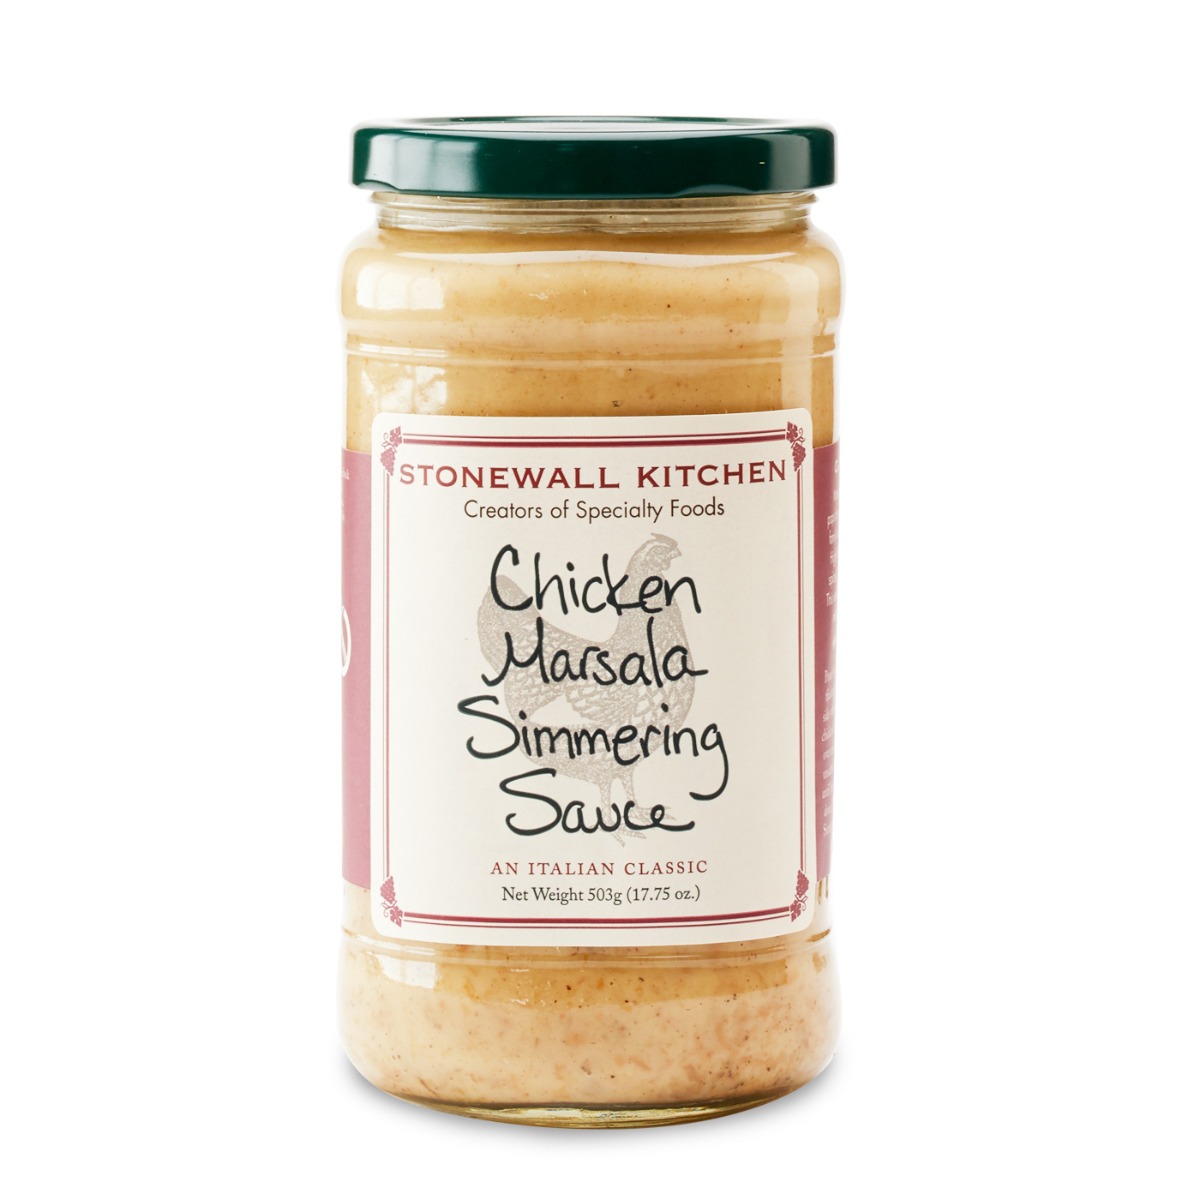 STONEWALL KITCHEN: Chicken Marsala Simmering Sauce, 17.75 oz - 0711381315156